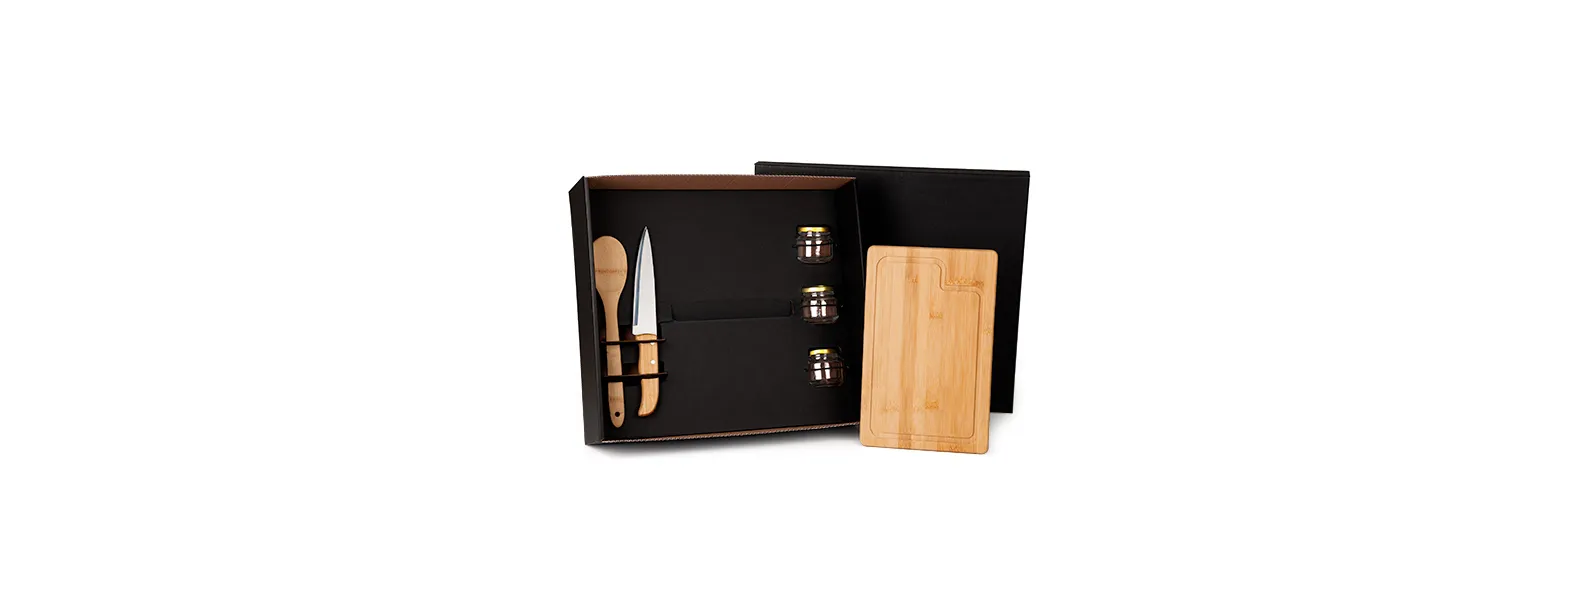 Kit para cozinha e tempero. Conjunto composto por uma tábua e colher 30 cm em bambu; Uma faca 7” em aço inox/bambu e 3 potinhos de vidro com tampa.